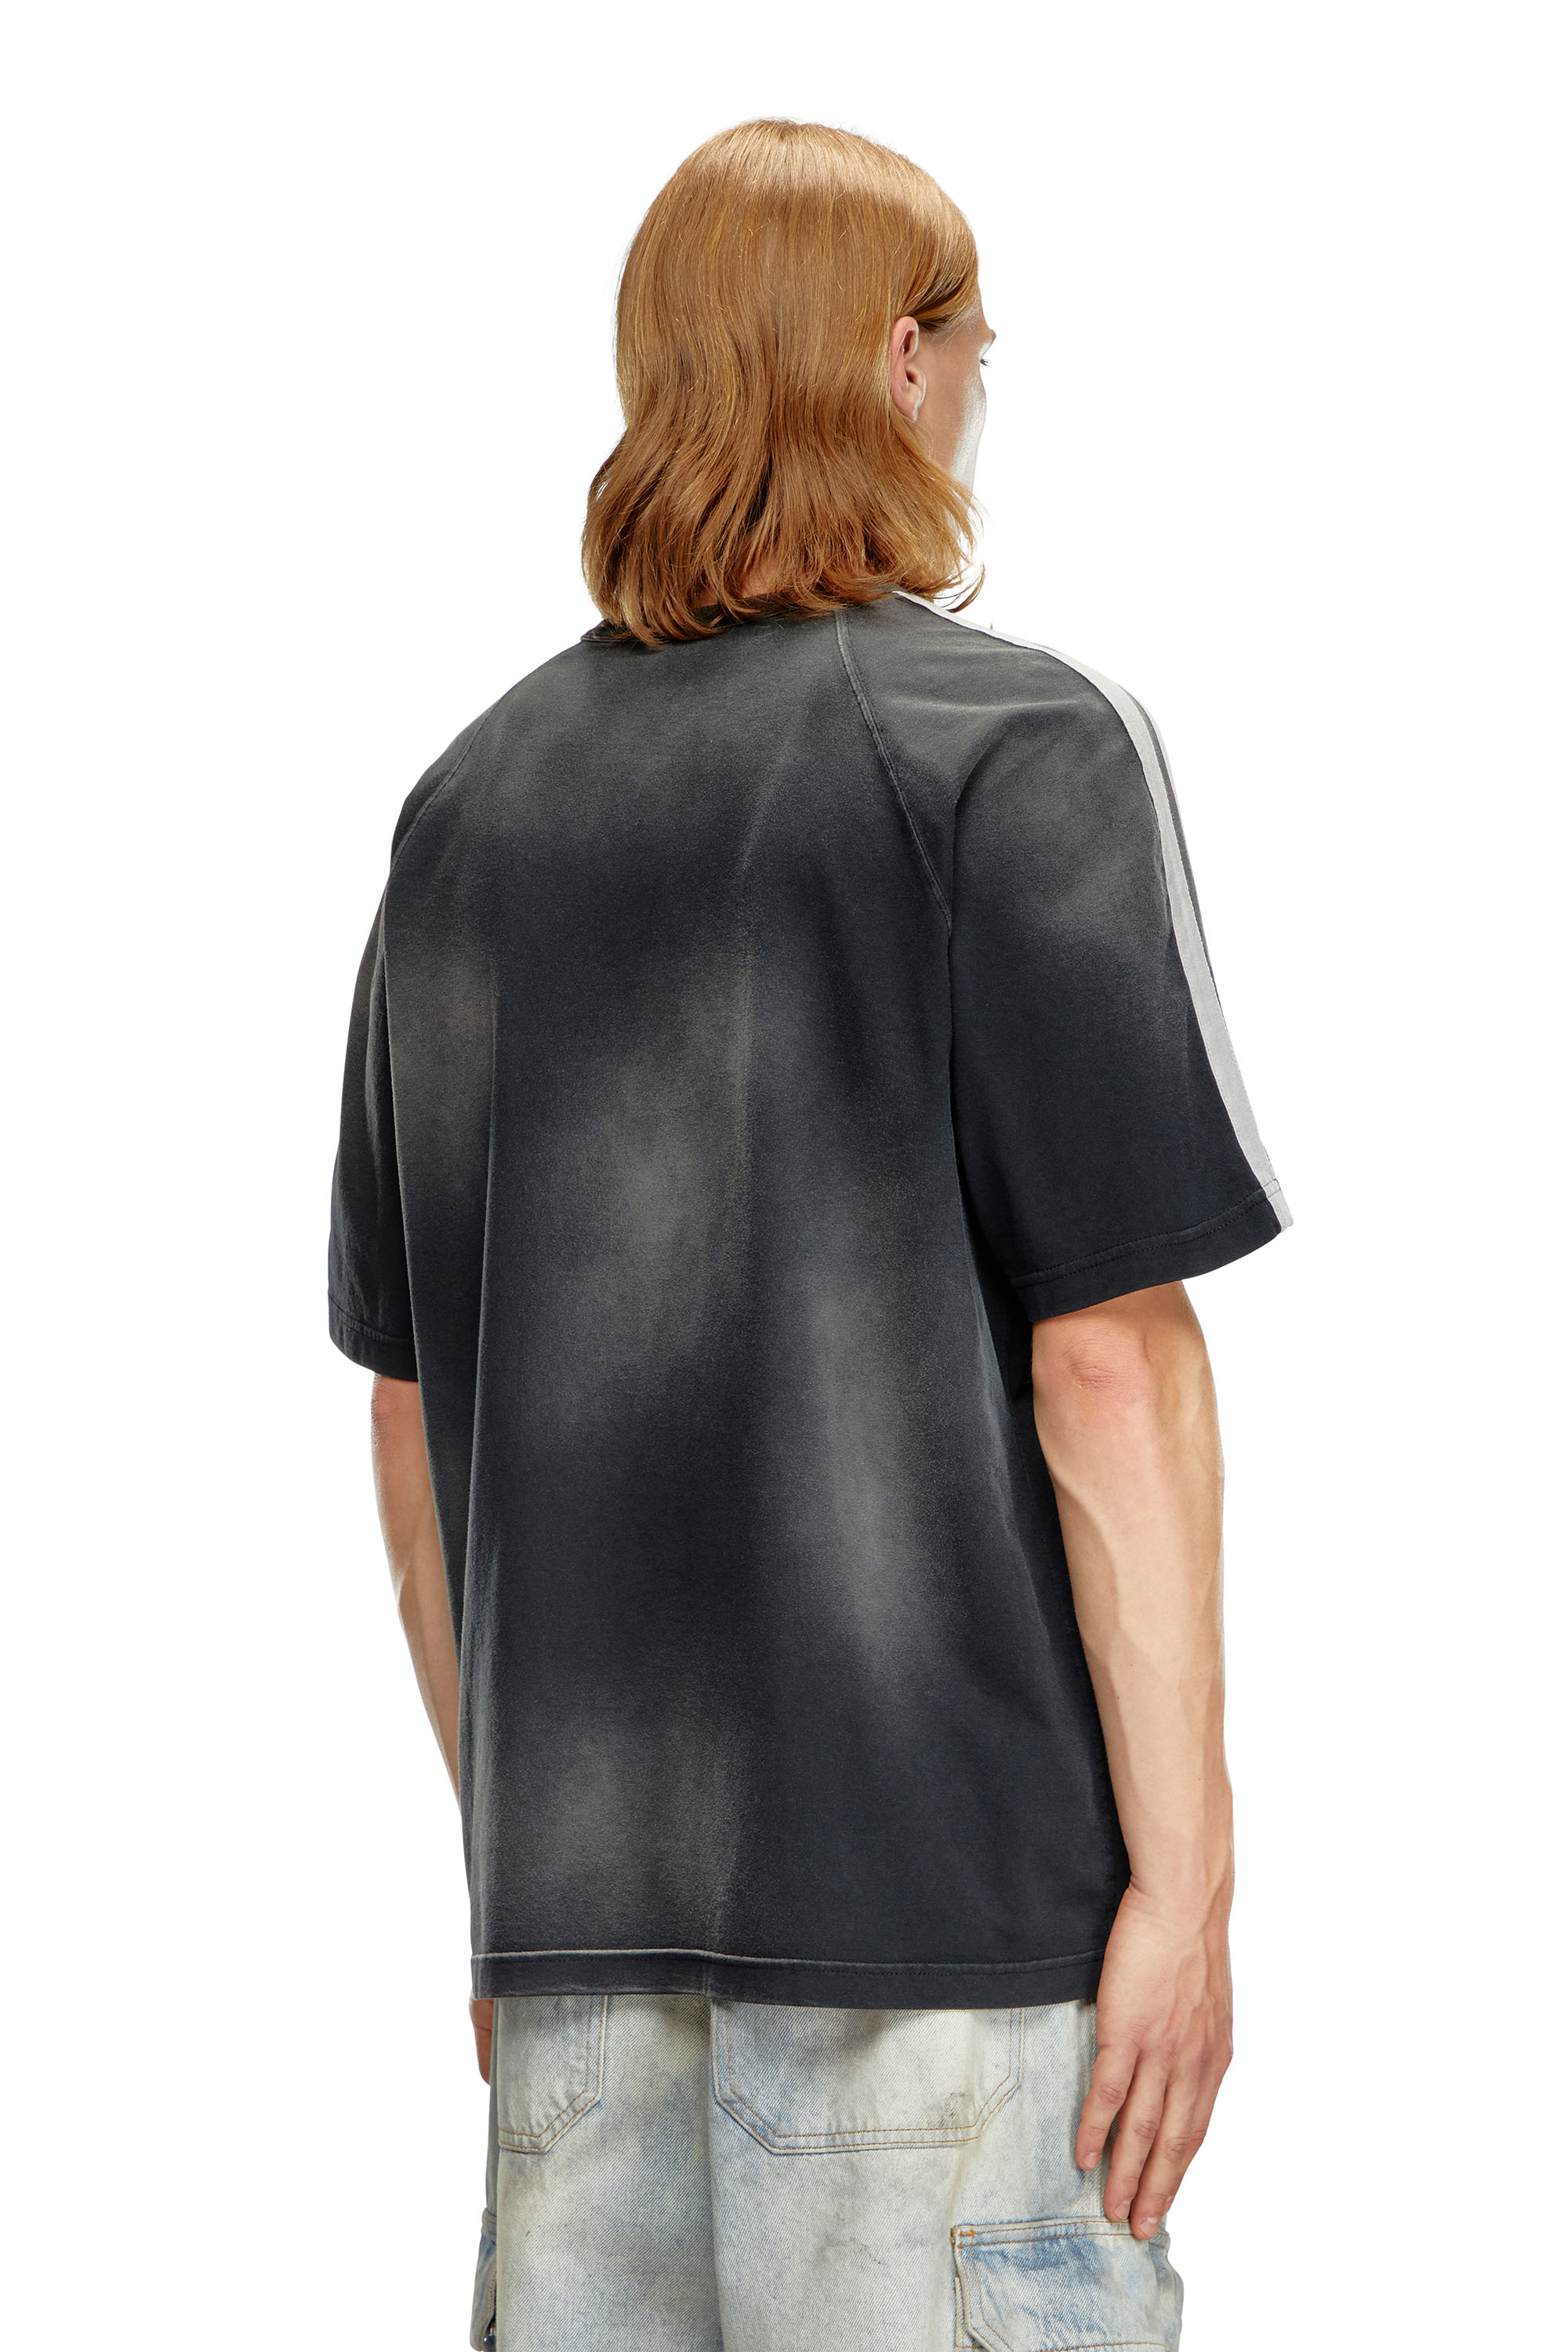 Diesel - T-ROXT-STRIPE, Hombre Camiseta desteñida con logotipo estampado en relieve in Negro - Image 2